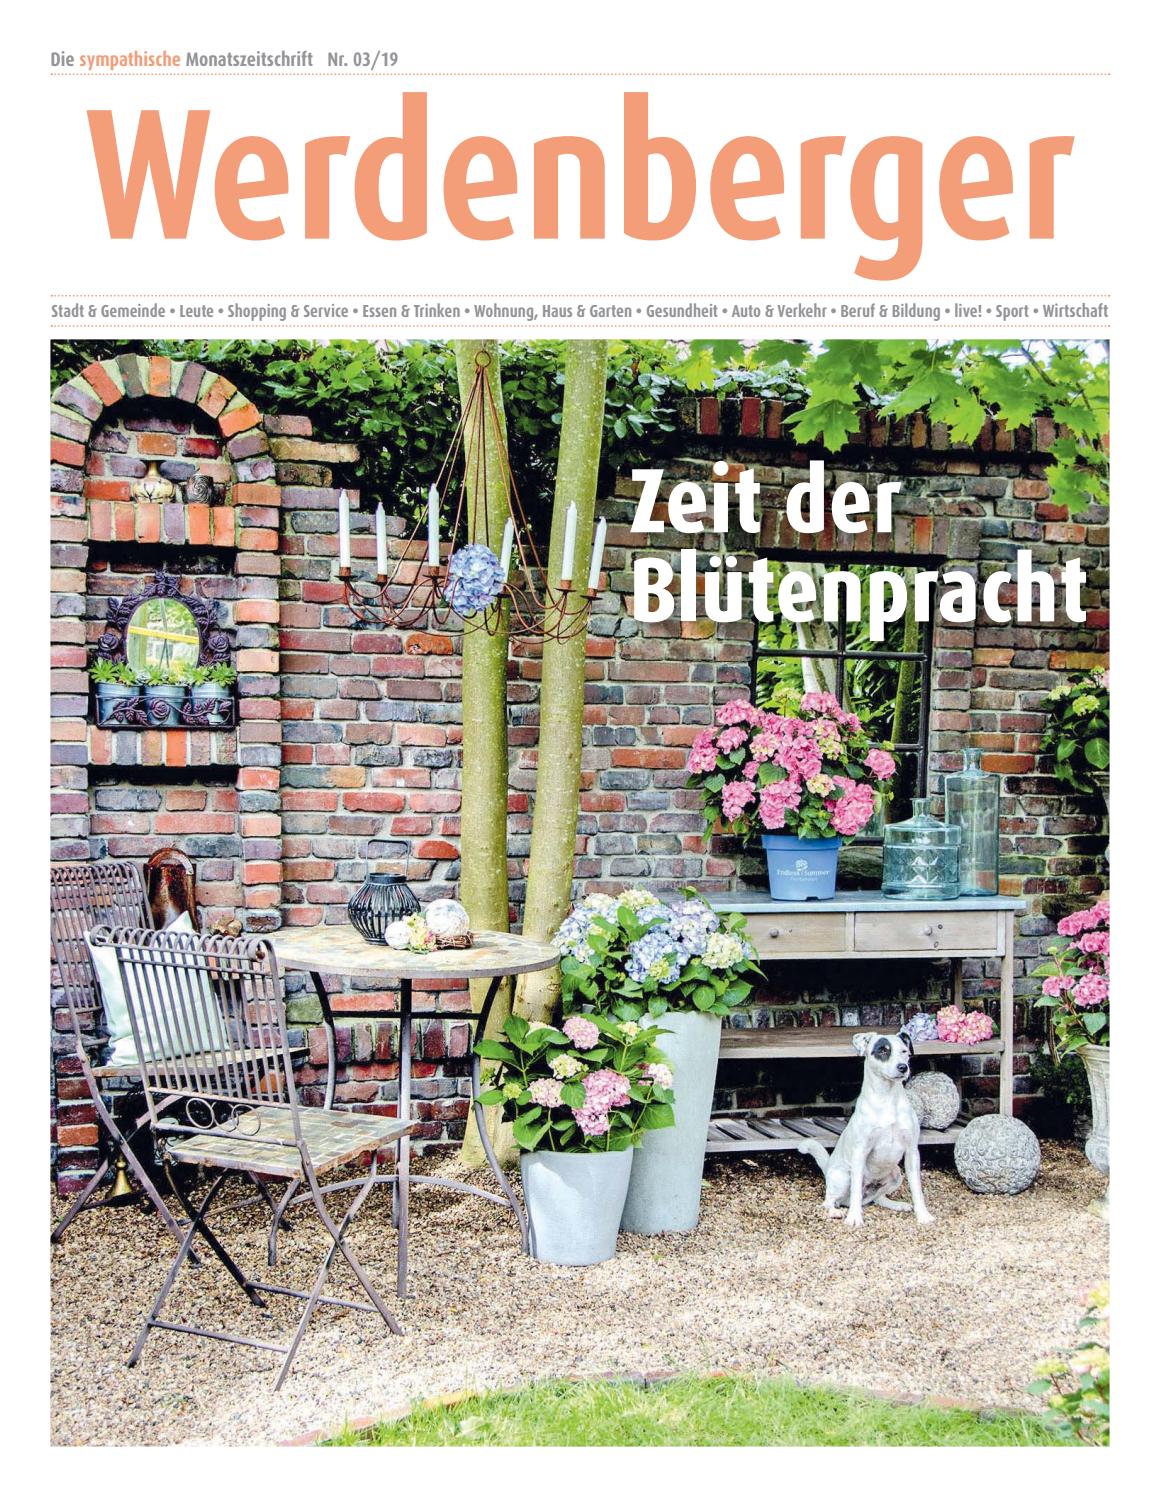 Garten Bedarf Neu Werdenberger Nr 3 19 April 2019 by Lie Monat issuu